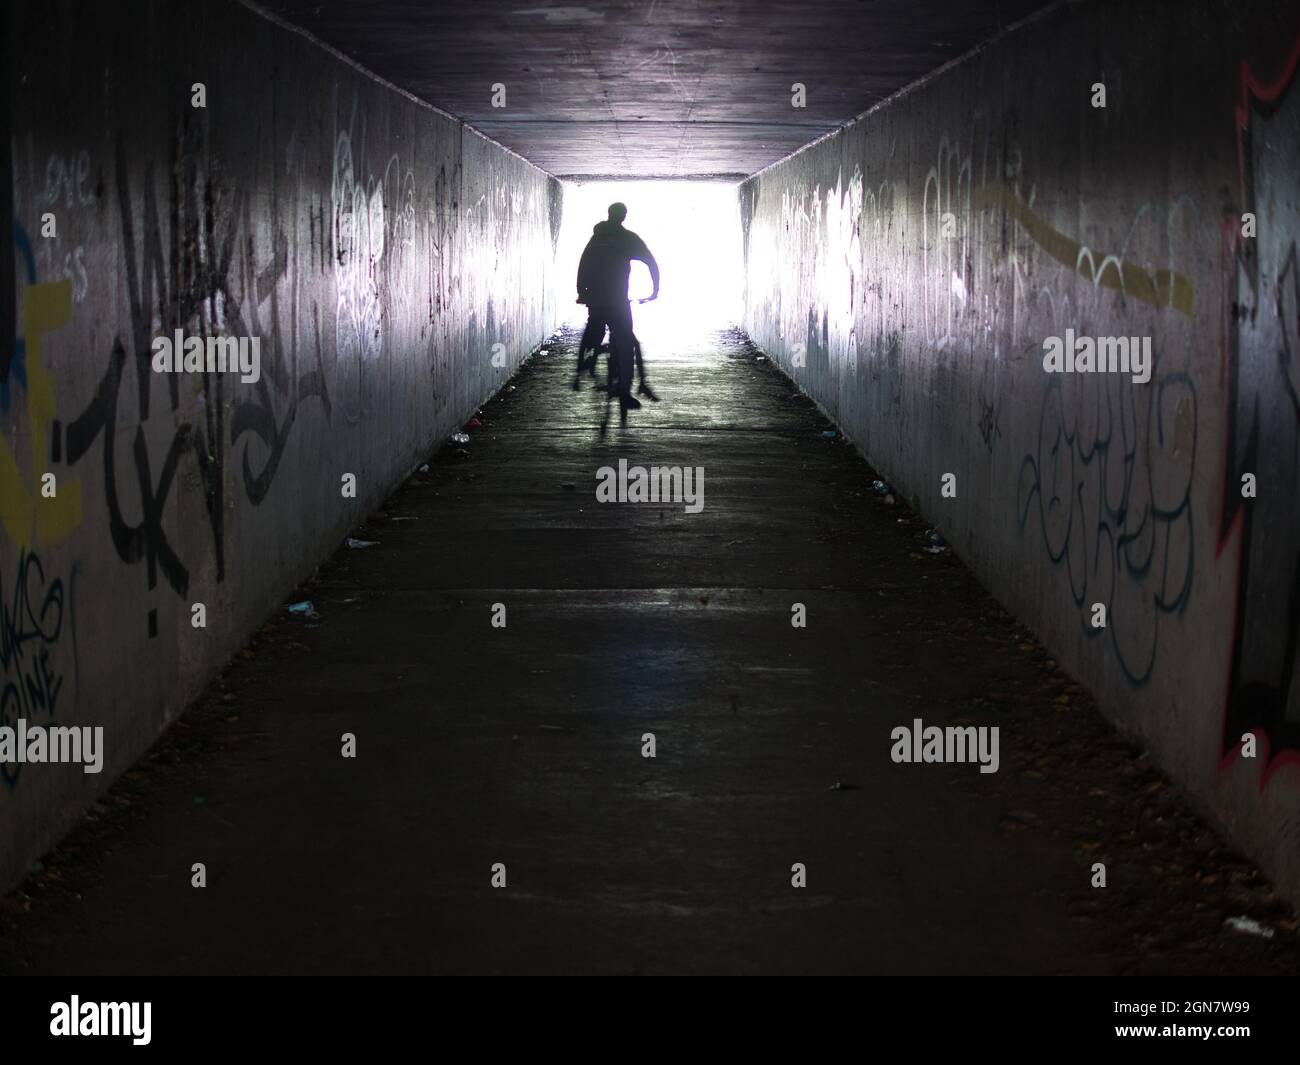 Con movimiento desenfocado y fuerte contraluz, dos jóvenes en un ciclo salen de un metro urbano a la luz del día con paredes cubiertas de graffiti a la izquierda y la derecha. Foto de stock